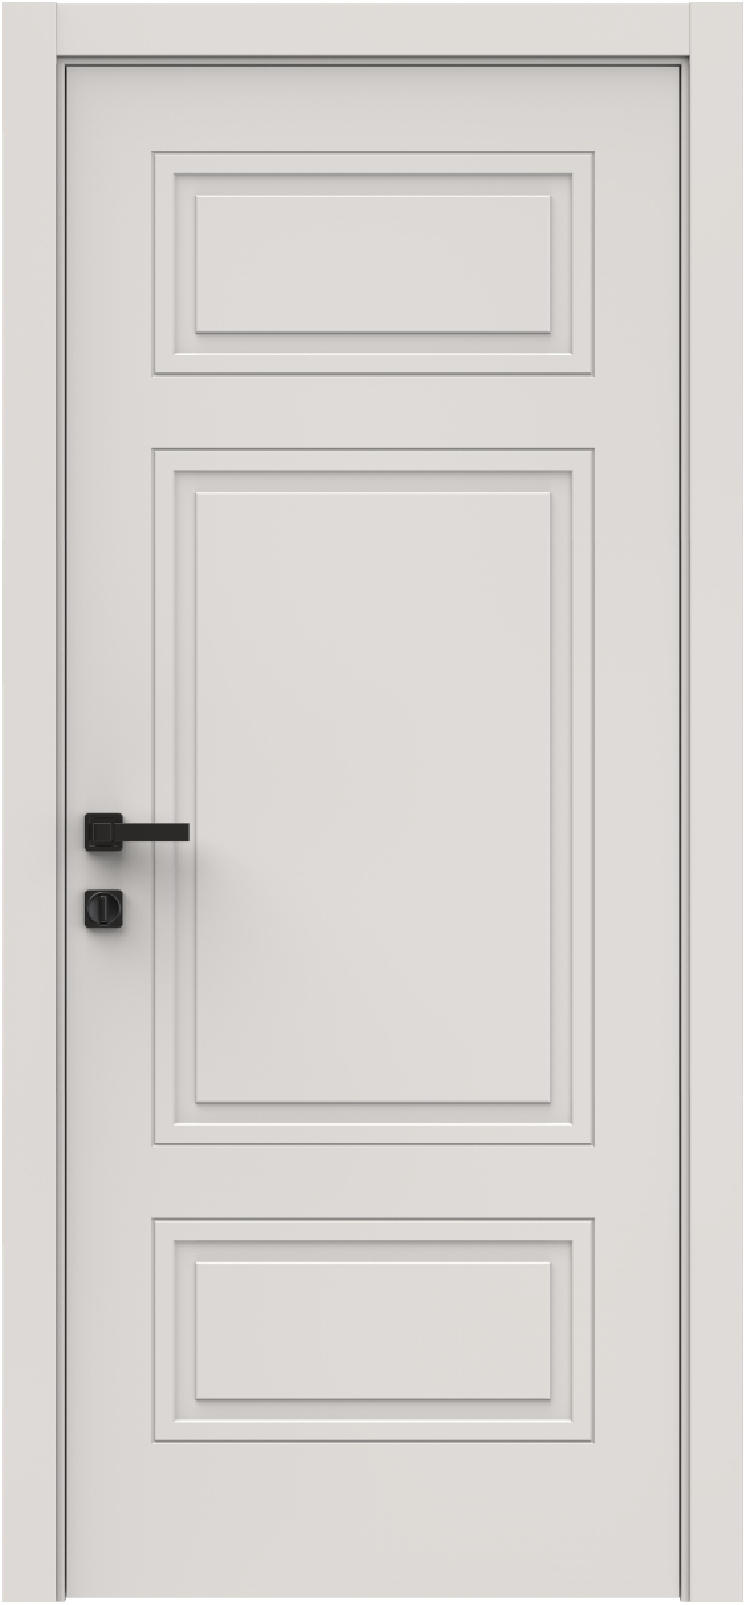 Questdoors Межкомнатная дверь QID5, арт. 26325 - фото №1